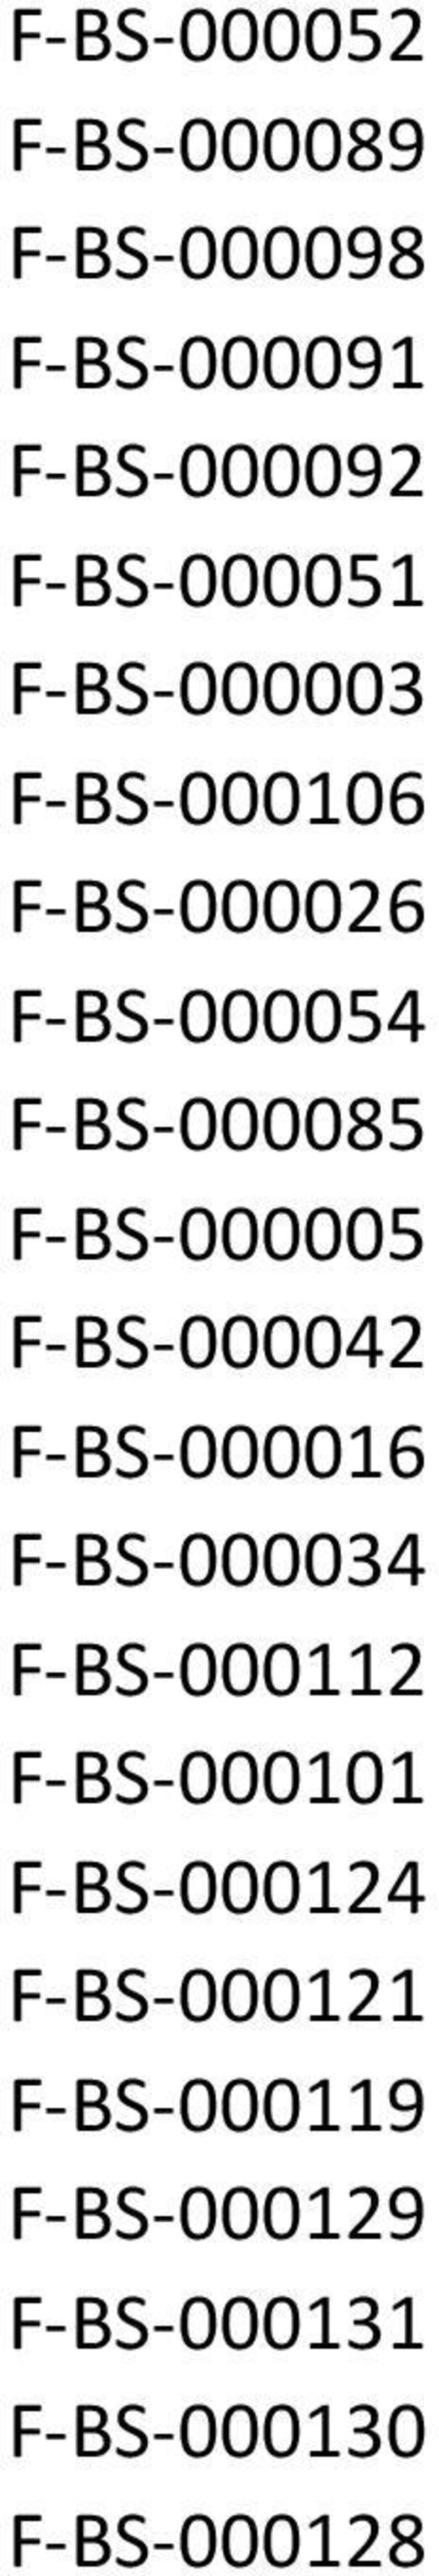 F-BS-000042 F-BS-000016 F-BS-000034 F-BS-000112 F-BS-000101 F-BS-000124